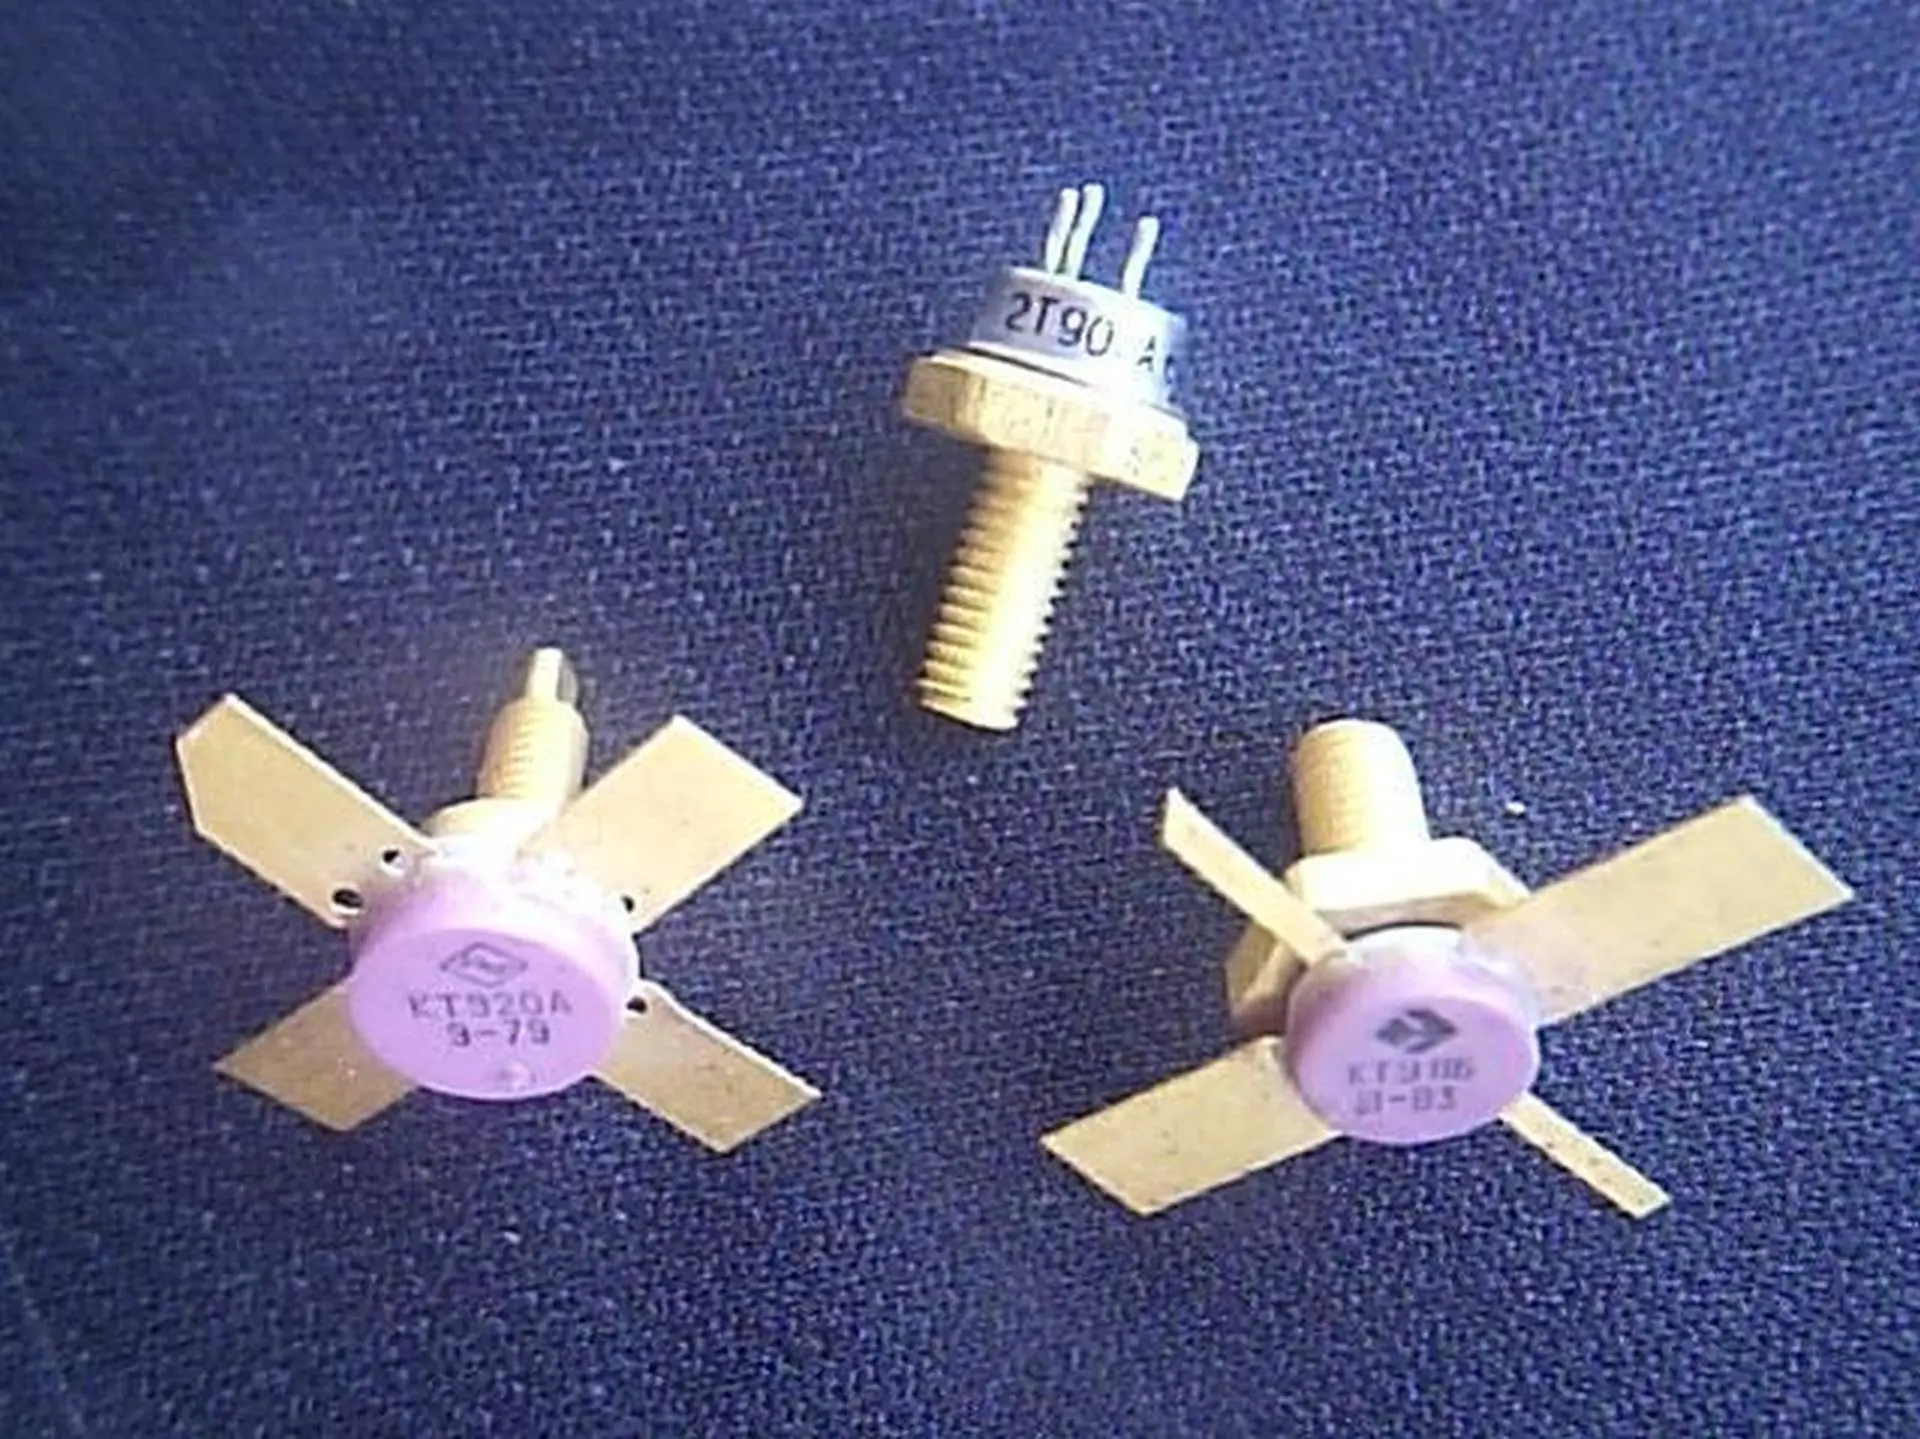 Транзисторы 2Т907, КТ911 и КТ920.